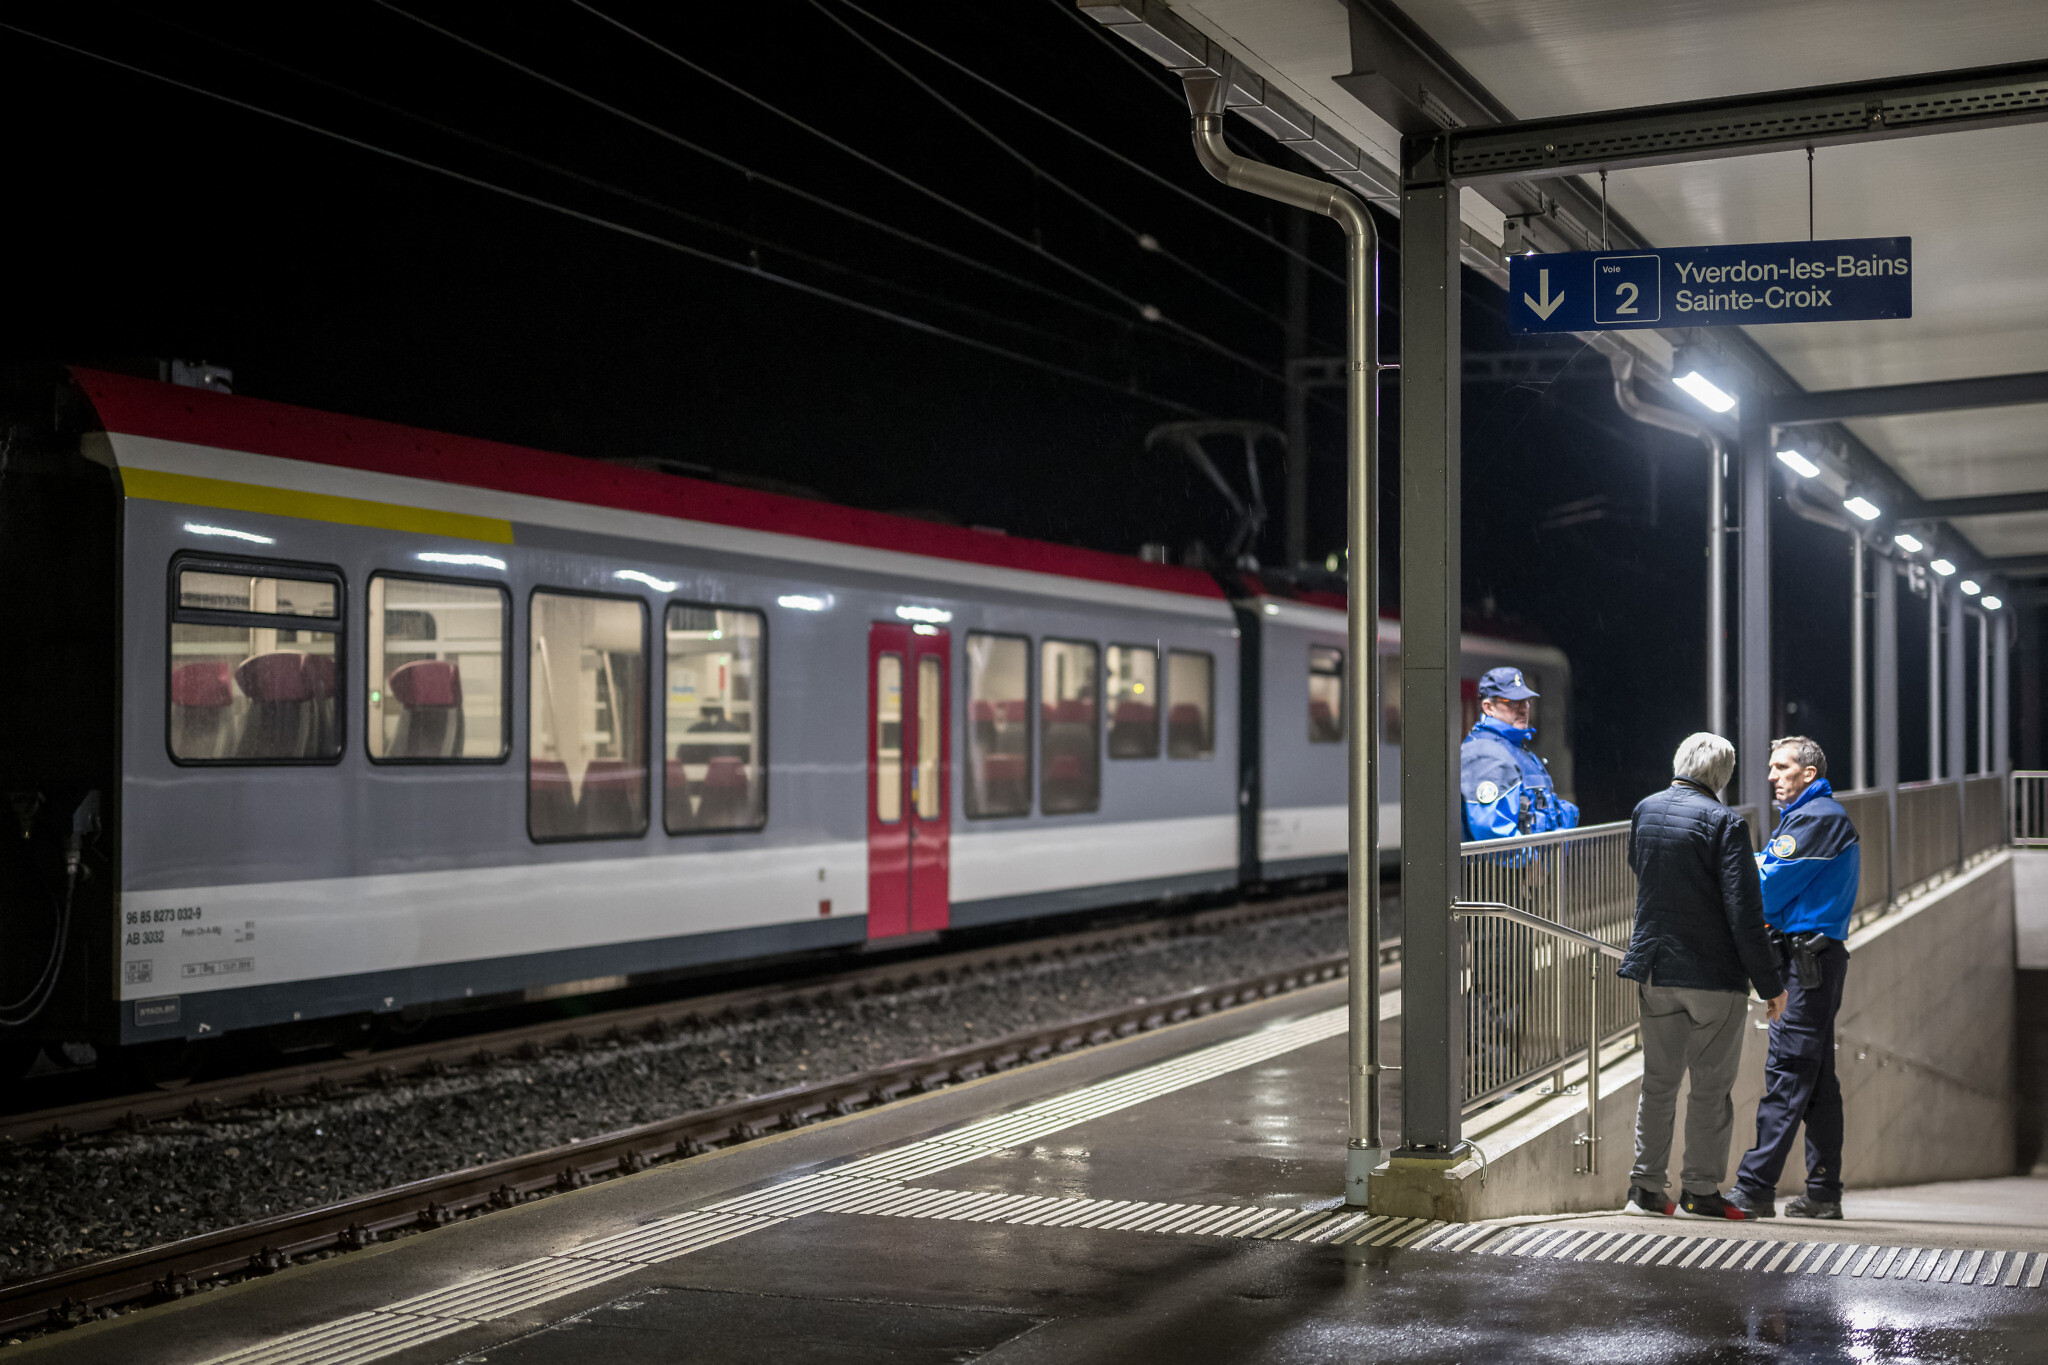 Axe-wielding Iranian asylum seeker killed by police in Swiss train hostage situation